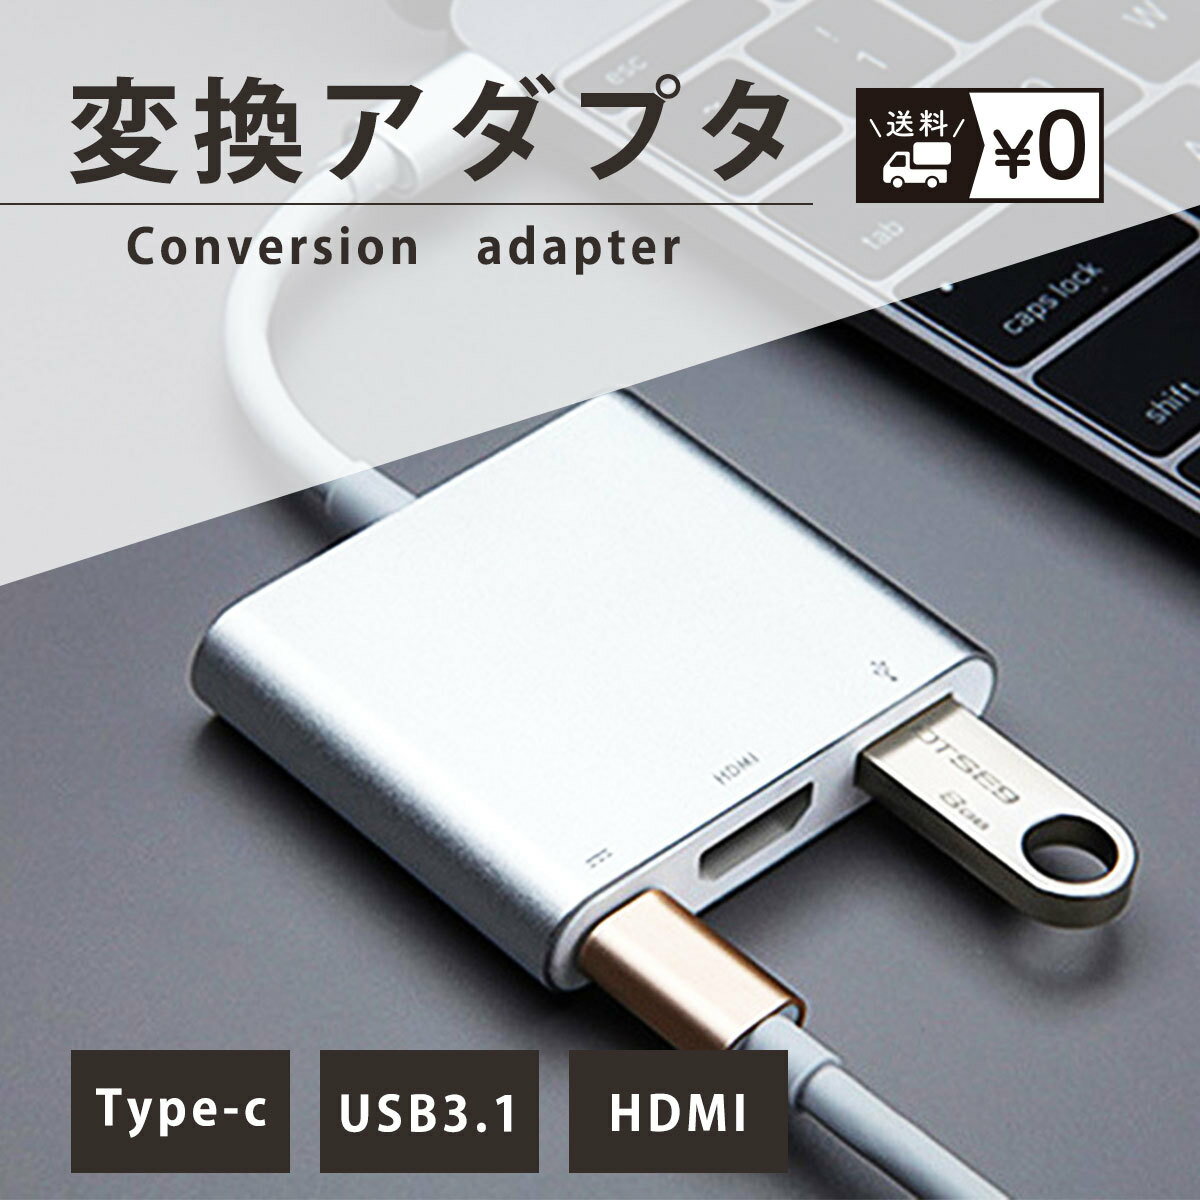 【送料無料】USB Type-C ハブ 変換アダプタ PC ノートパソコン HDMI 3in1 タイプC 変換ケーブル アクセサリー マルチ変換アダプター USB3.1 充電 シンプル パソコン オフィス 多機能